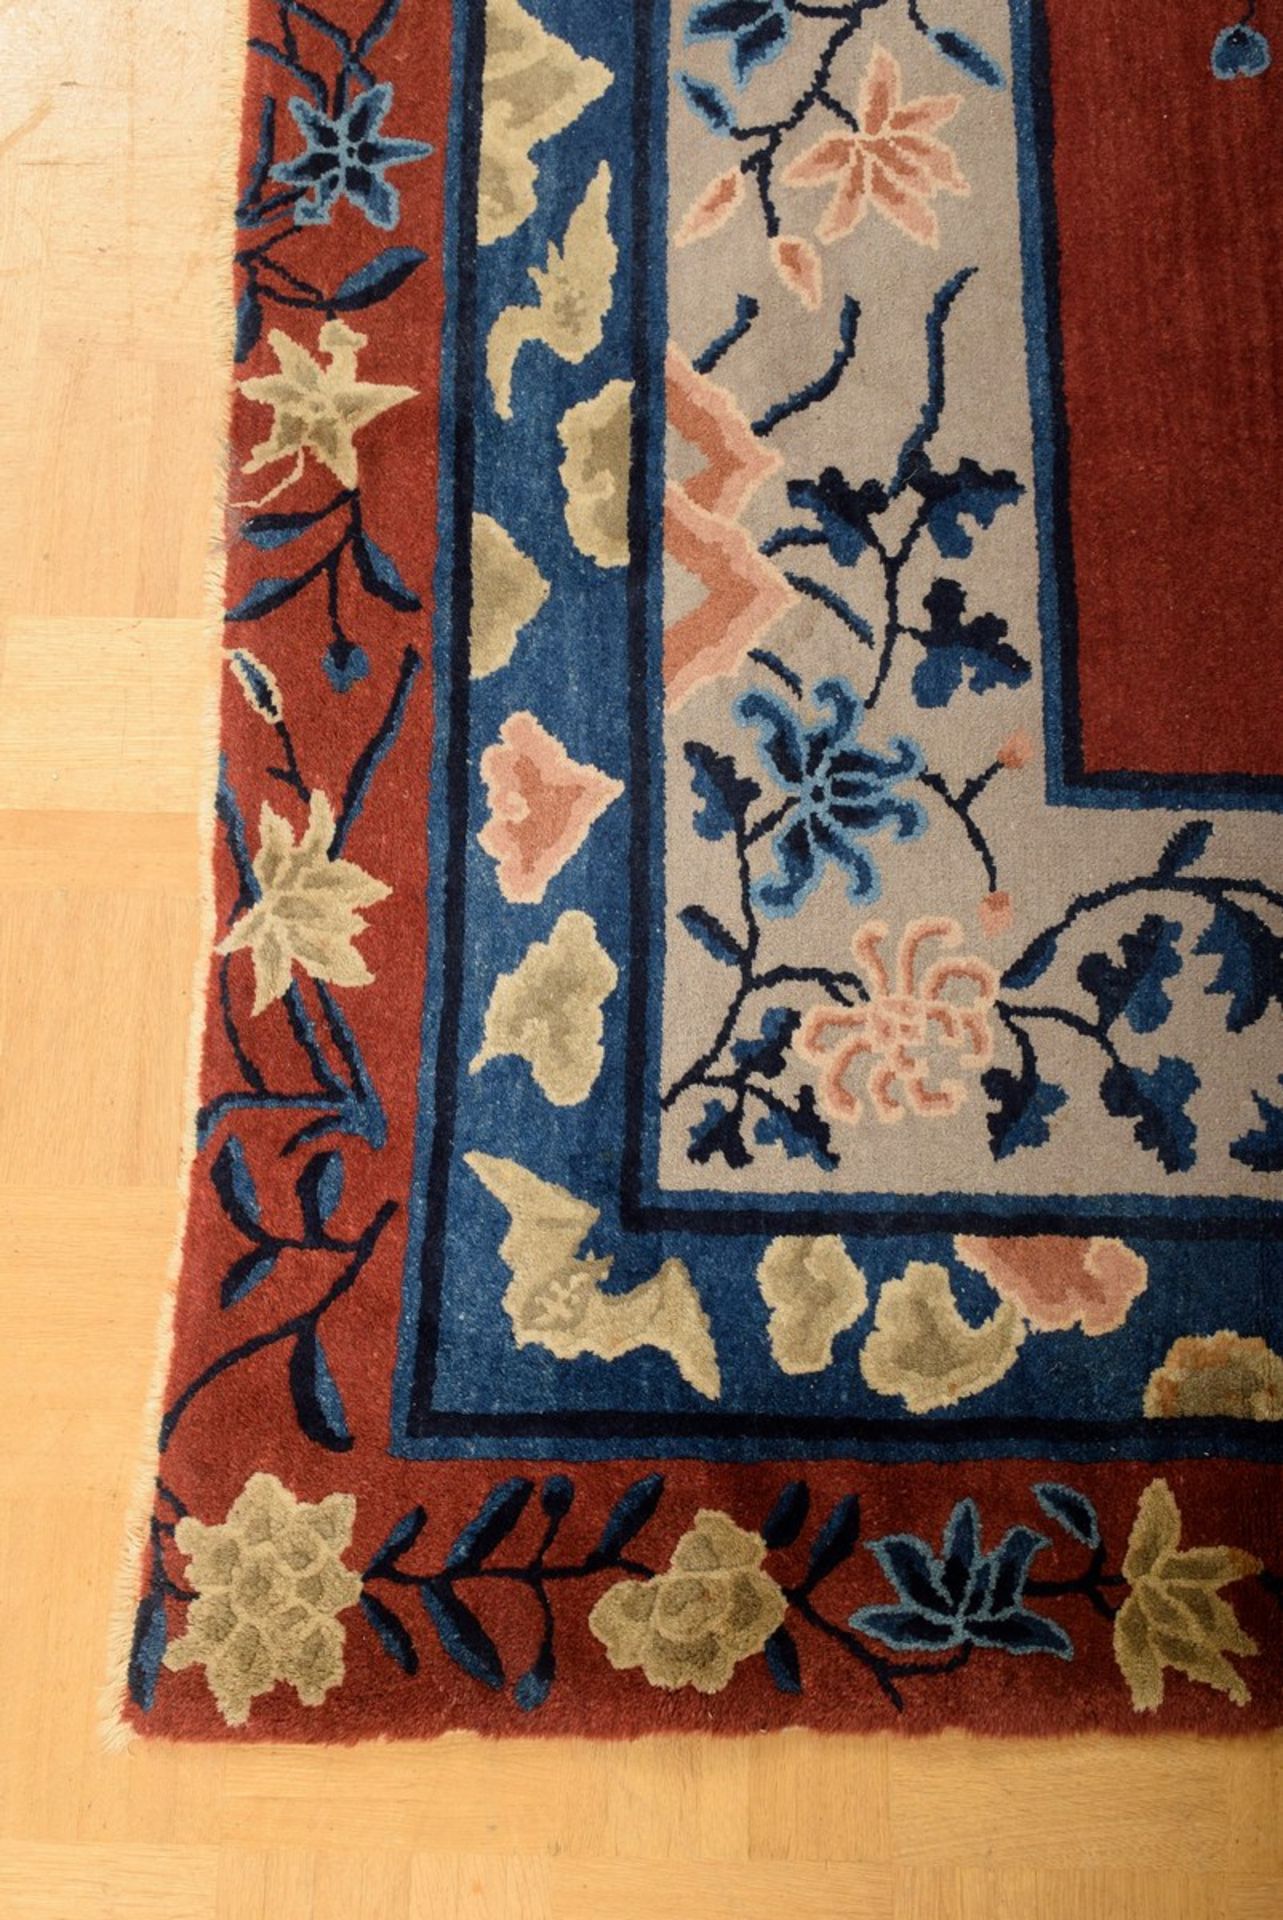 Großer Peking Teppich mit dreifach floraler Bordüre um dunkelrotes Innenfeld, 355x282cm, Ränder - Bild 6 aus 8